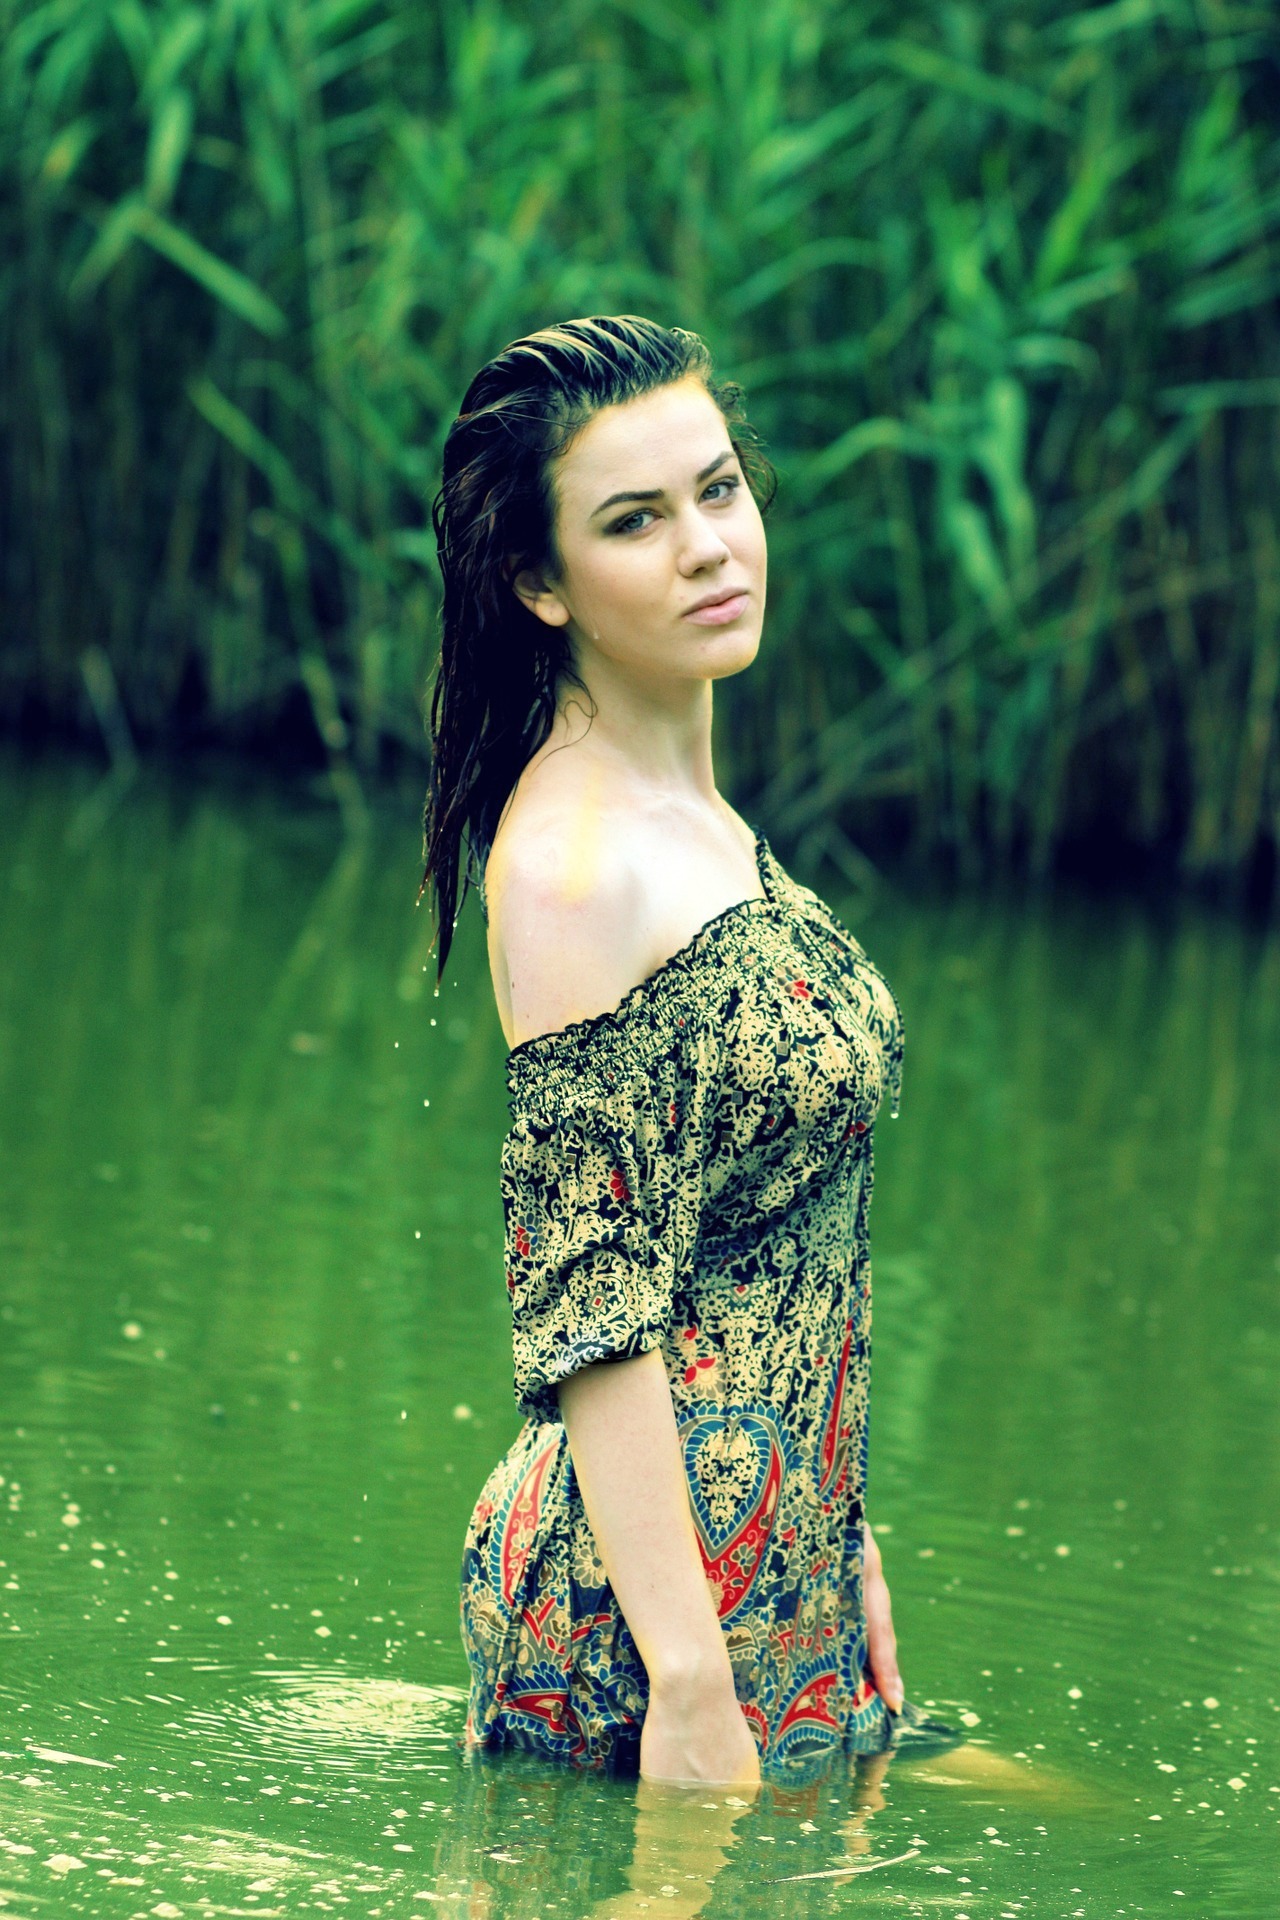 Фото Девушка в легком платье, стоящая по бедра в воде, на фоне стены зеленых деревьев